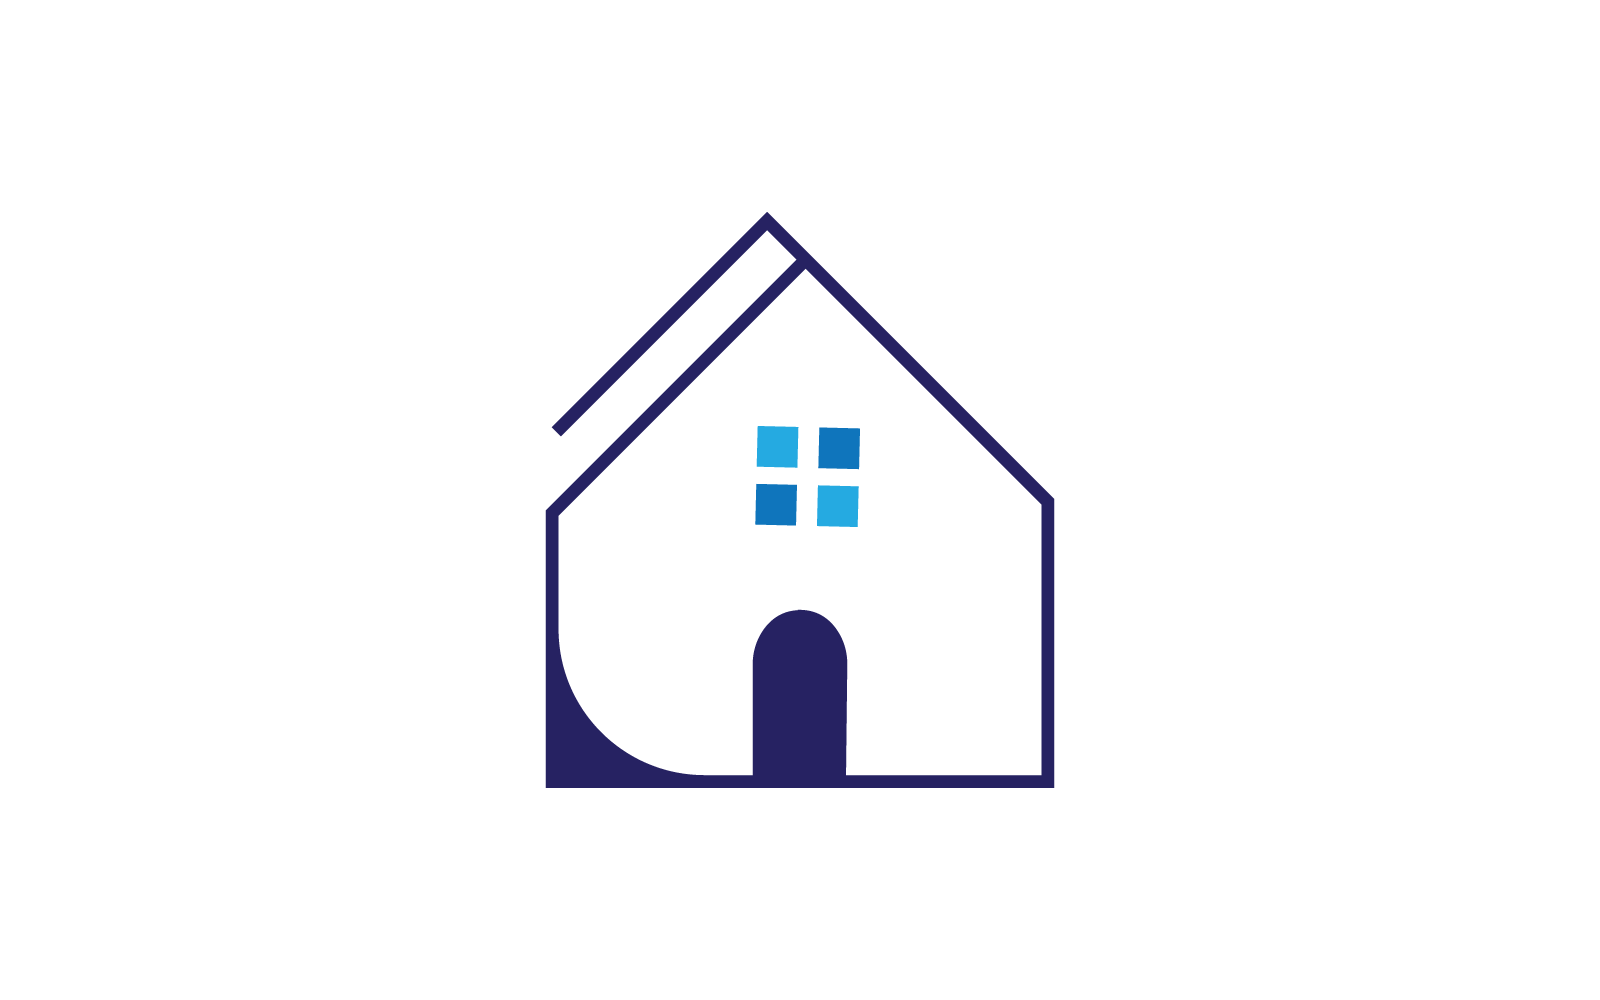 H Letter Property design Logo Template